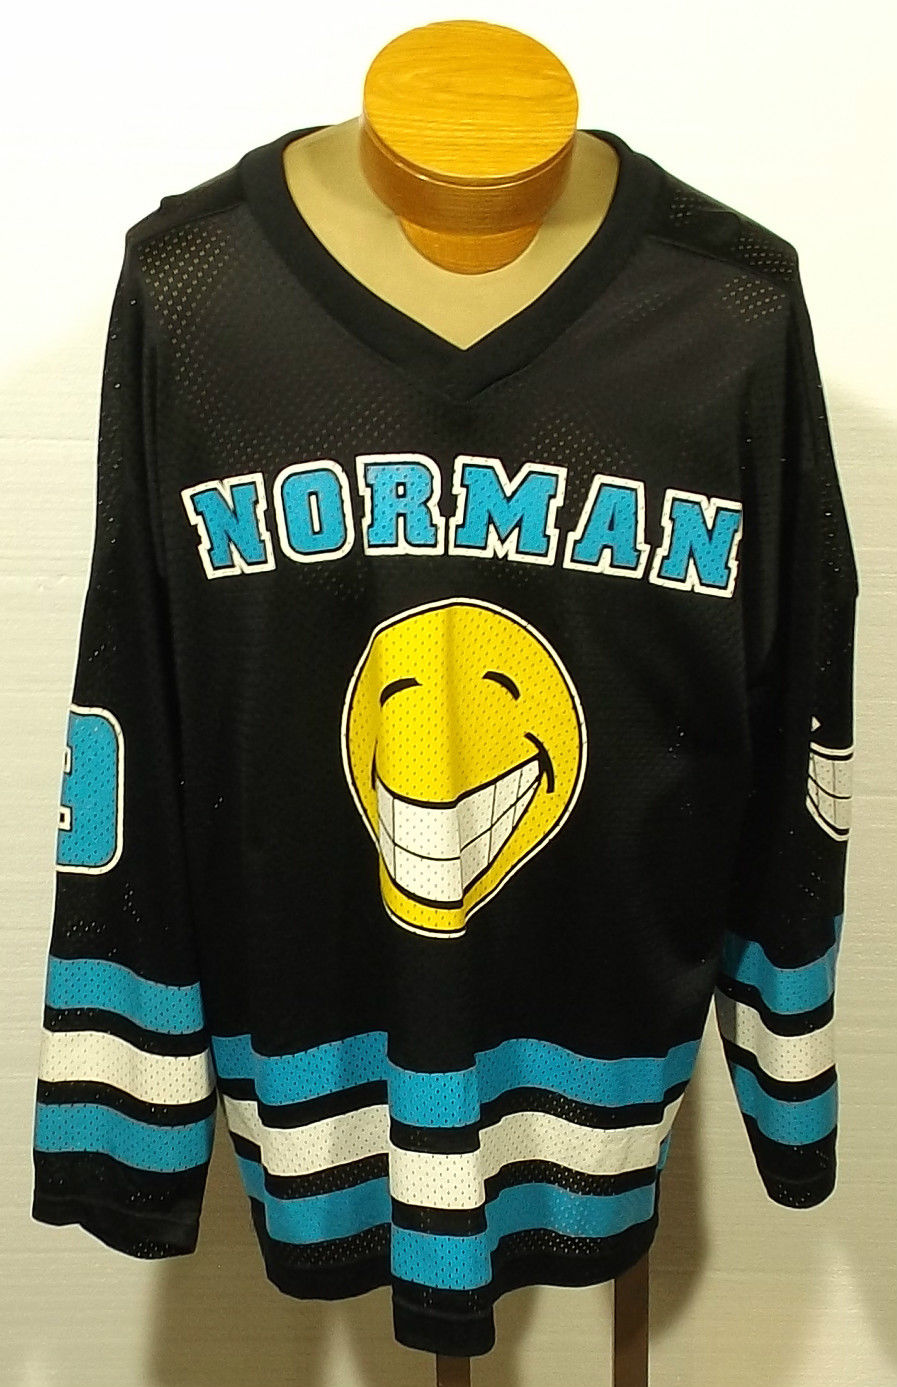 https://www.wrestlecrap.com/app/uploads/wc/2015/04/WCW-Norman-Smiley-Jersey-1.jpg